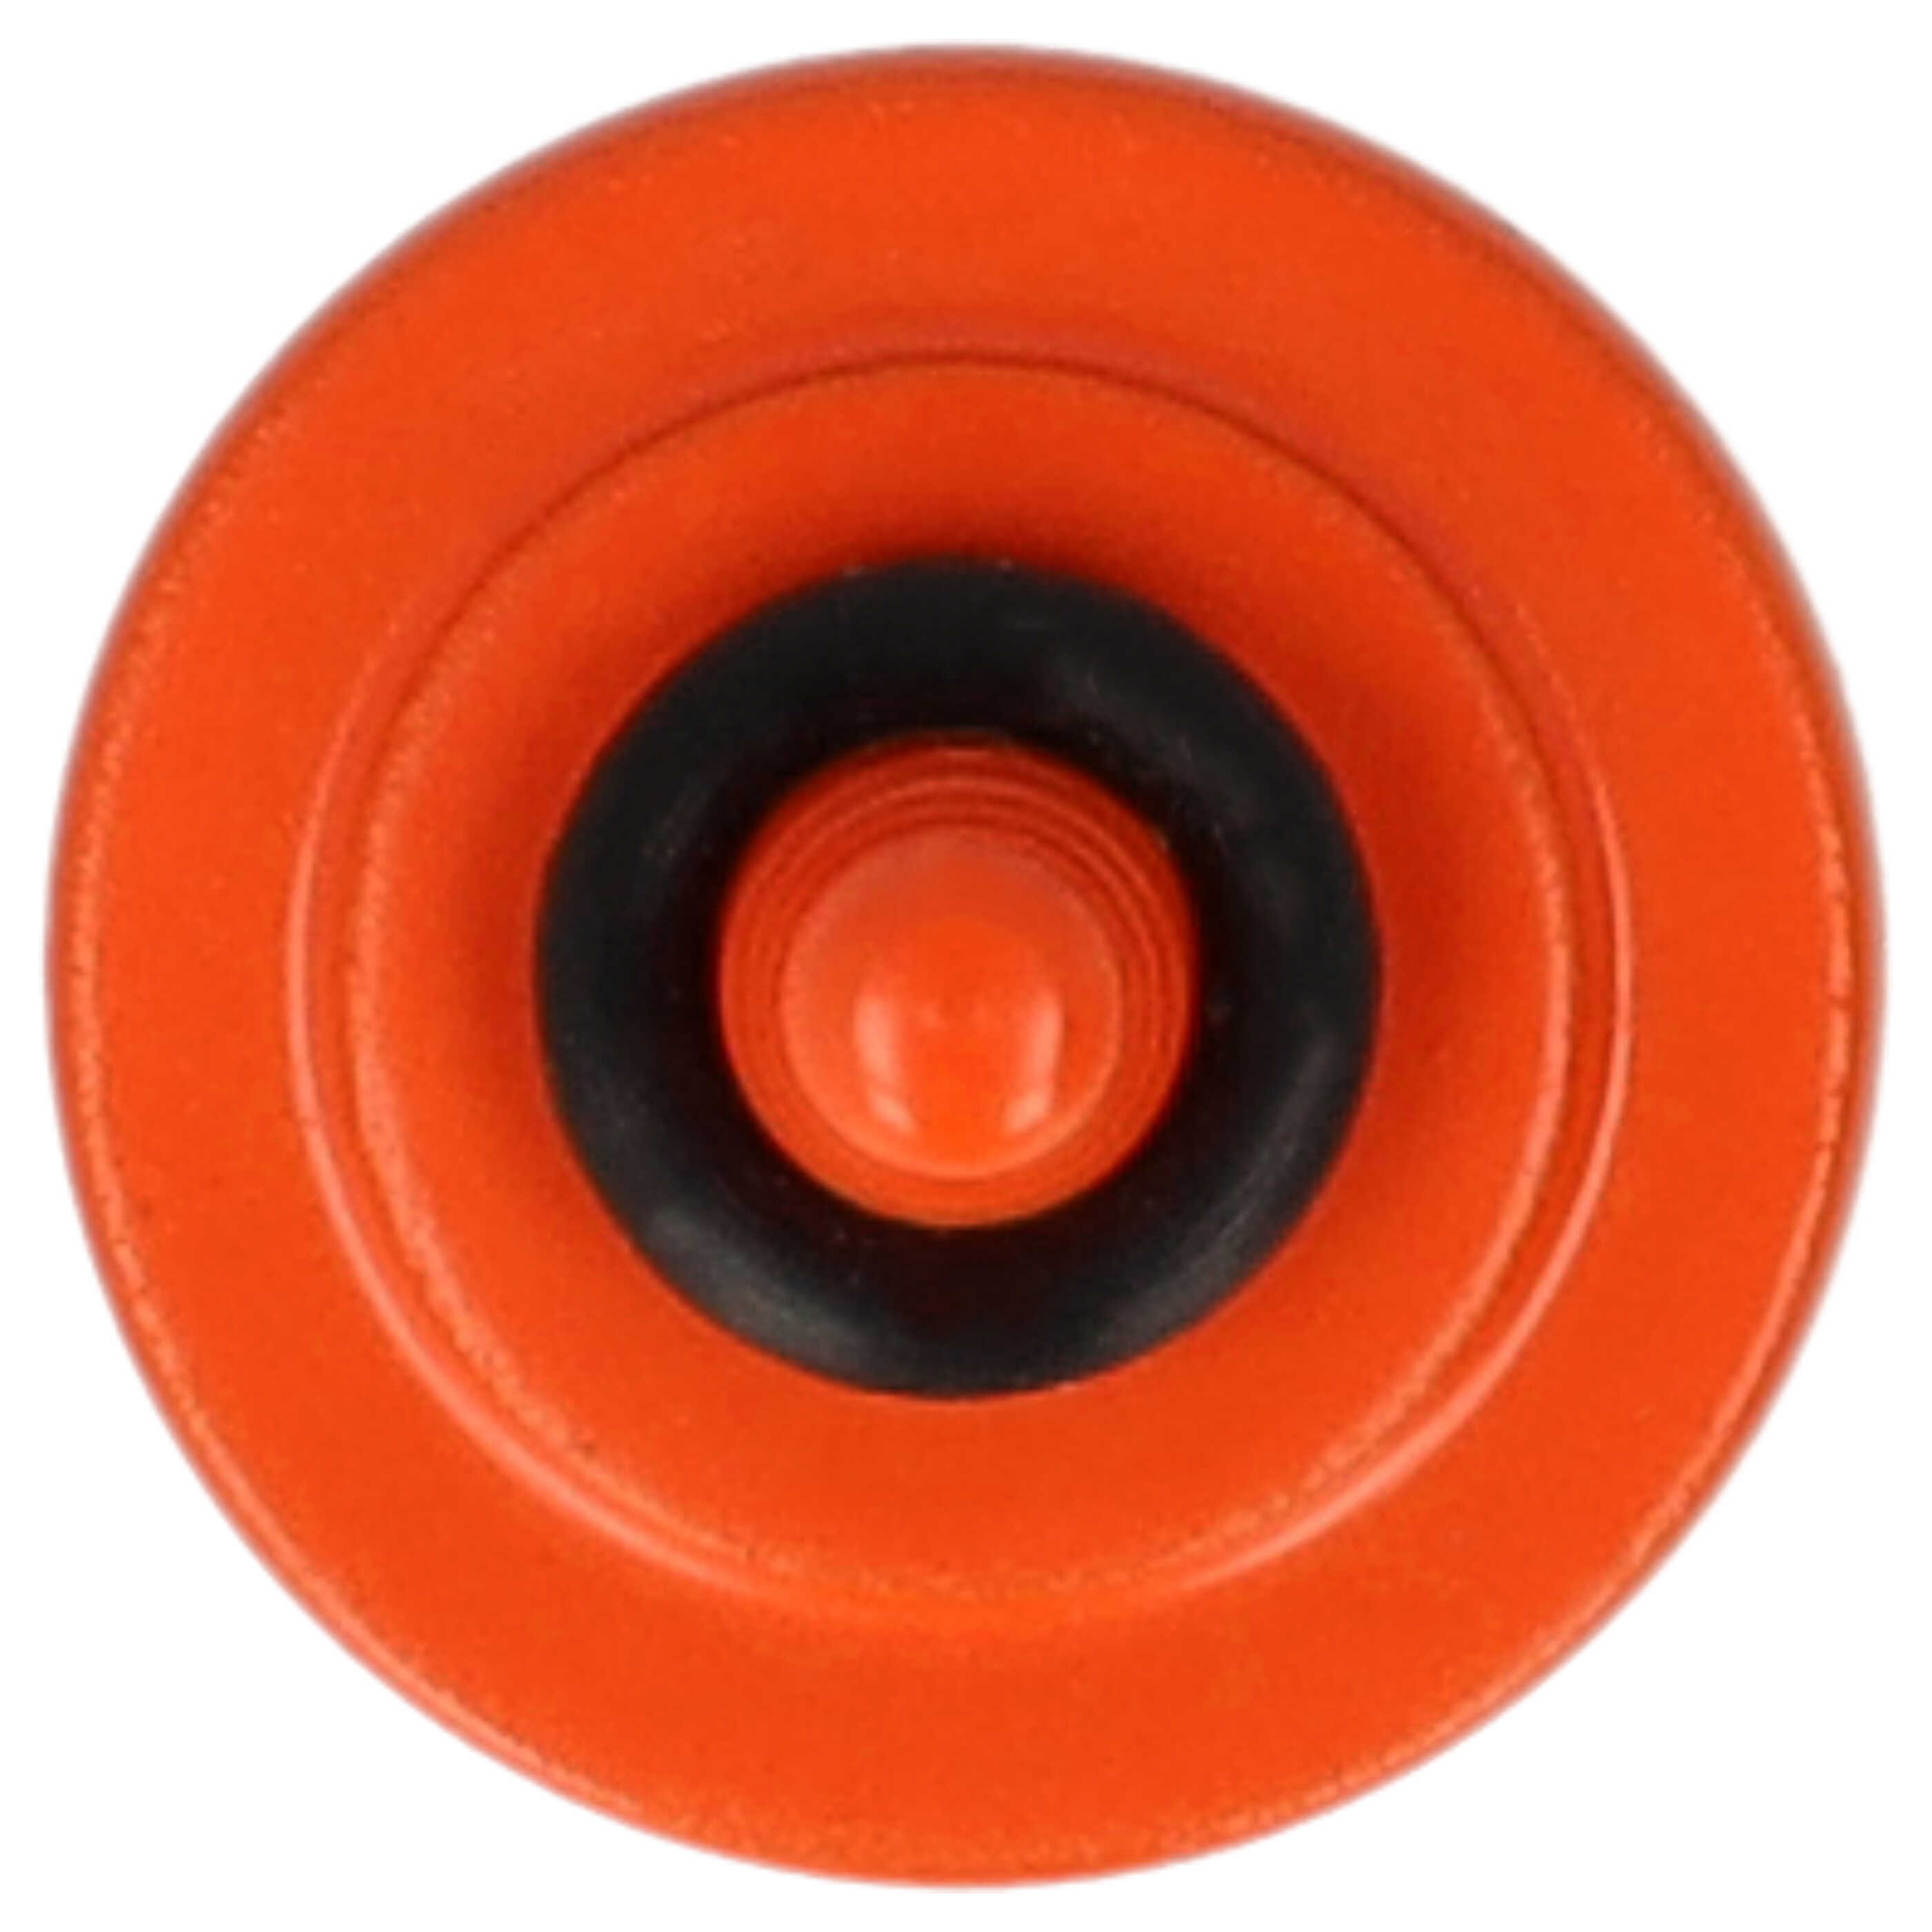 Przycisk spustu migawki do aparatu X-E1 Fujifilm - metal, pomarańczowy